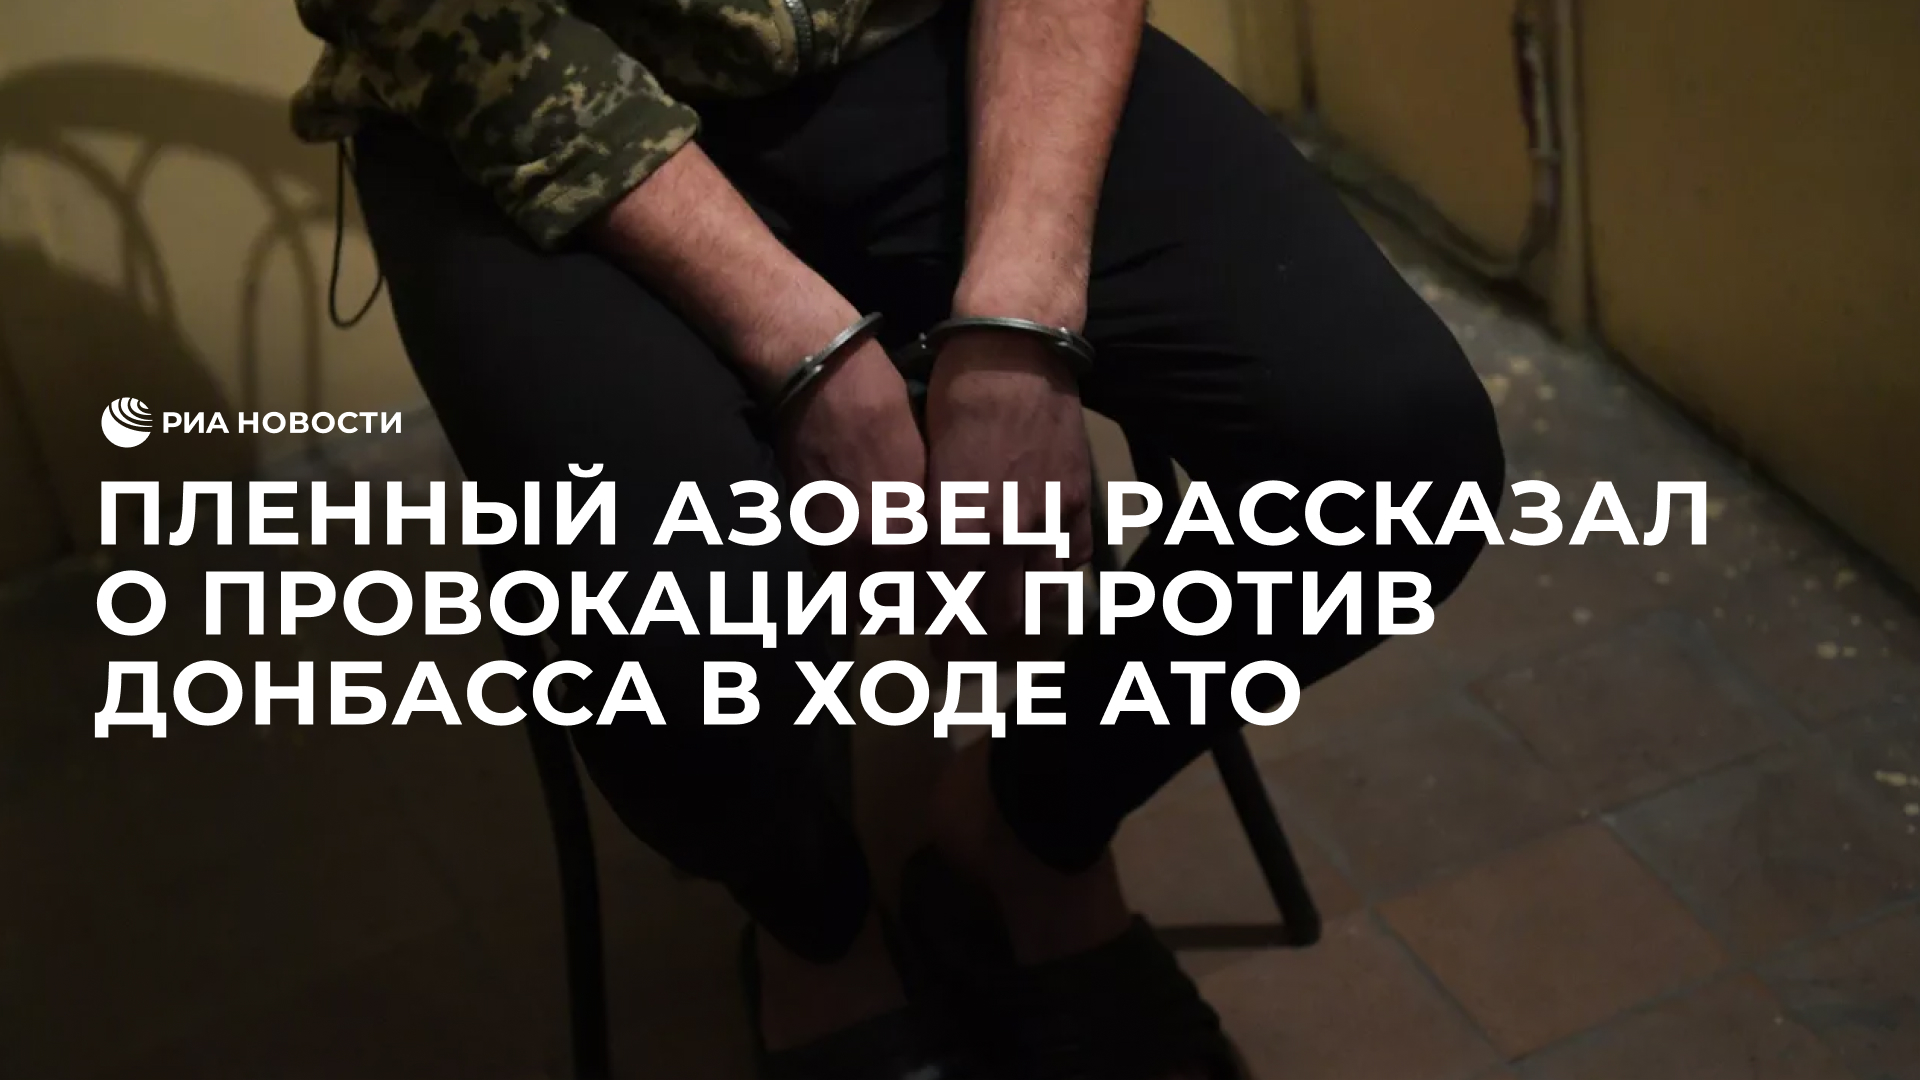 Пленный азовец рассказал о провокациях против Донбасса в ходе АТО